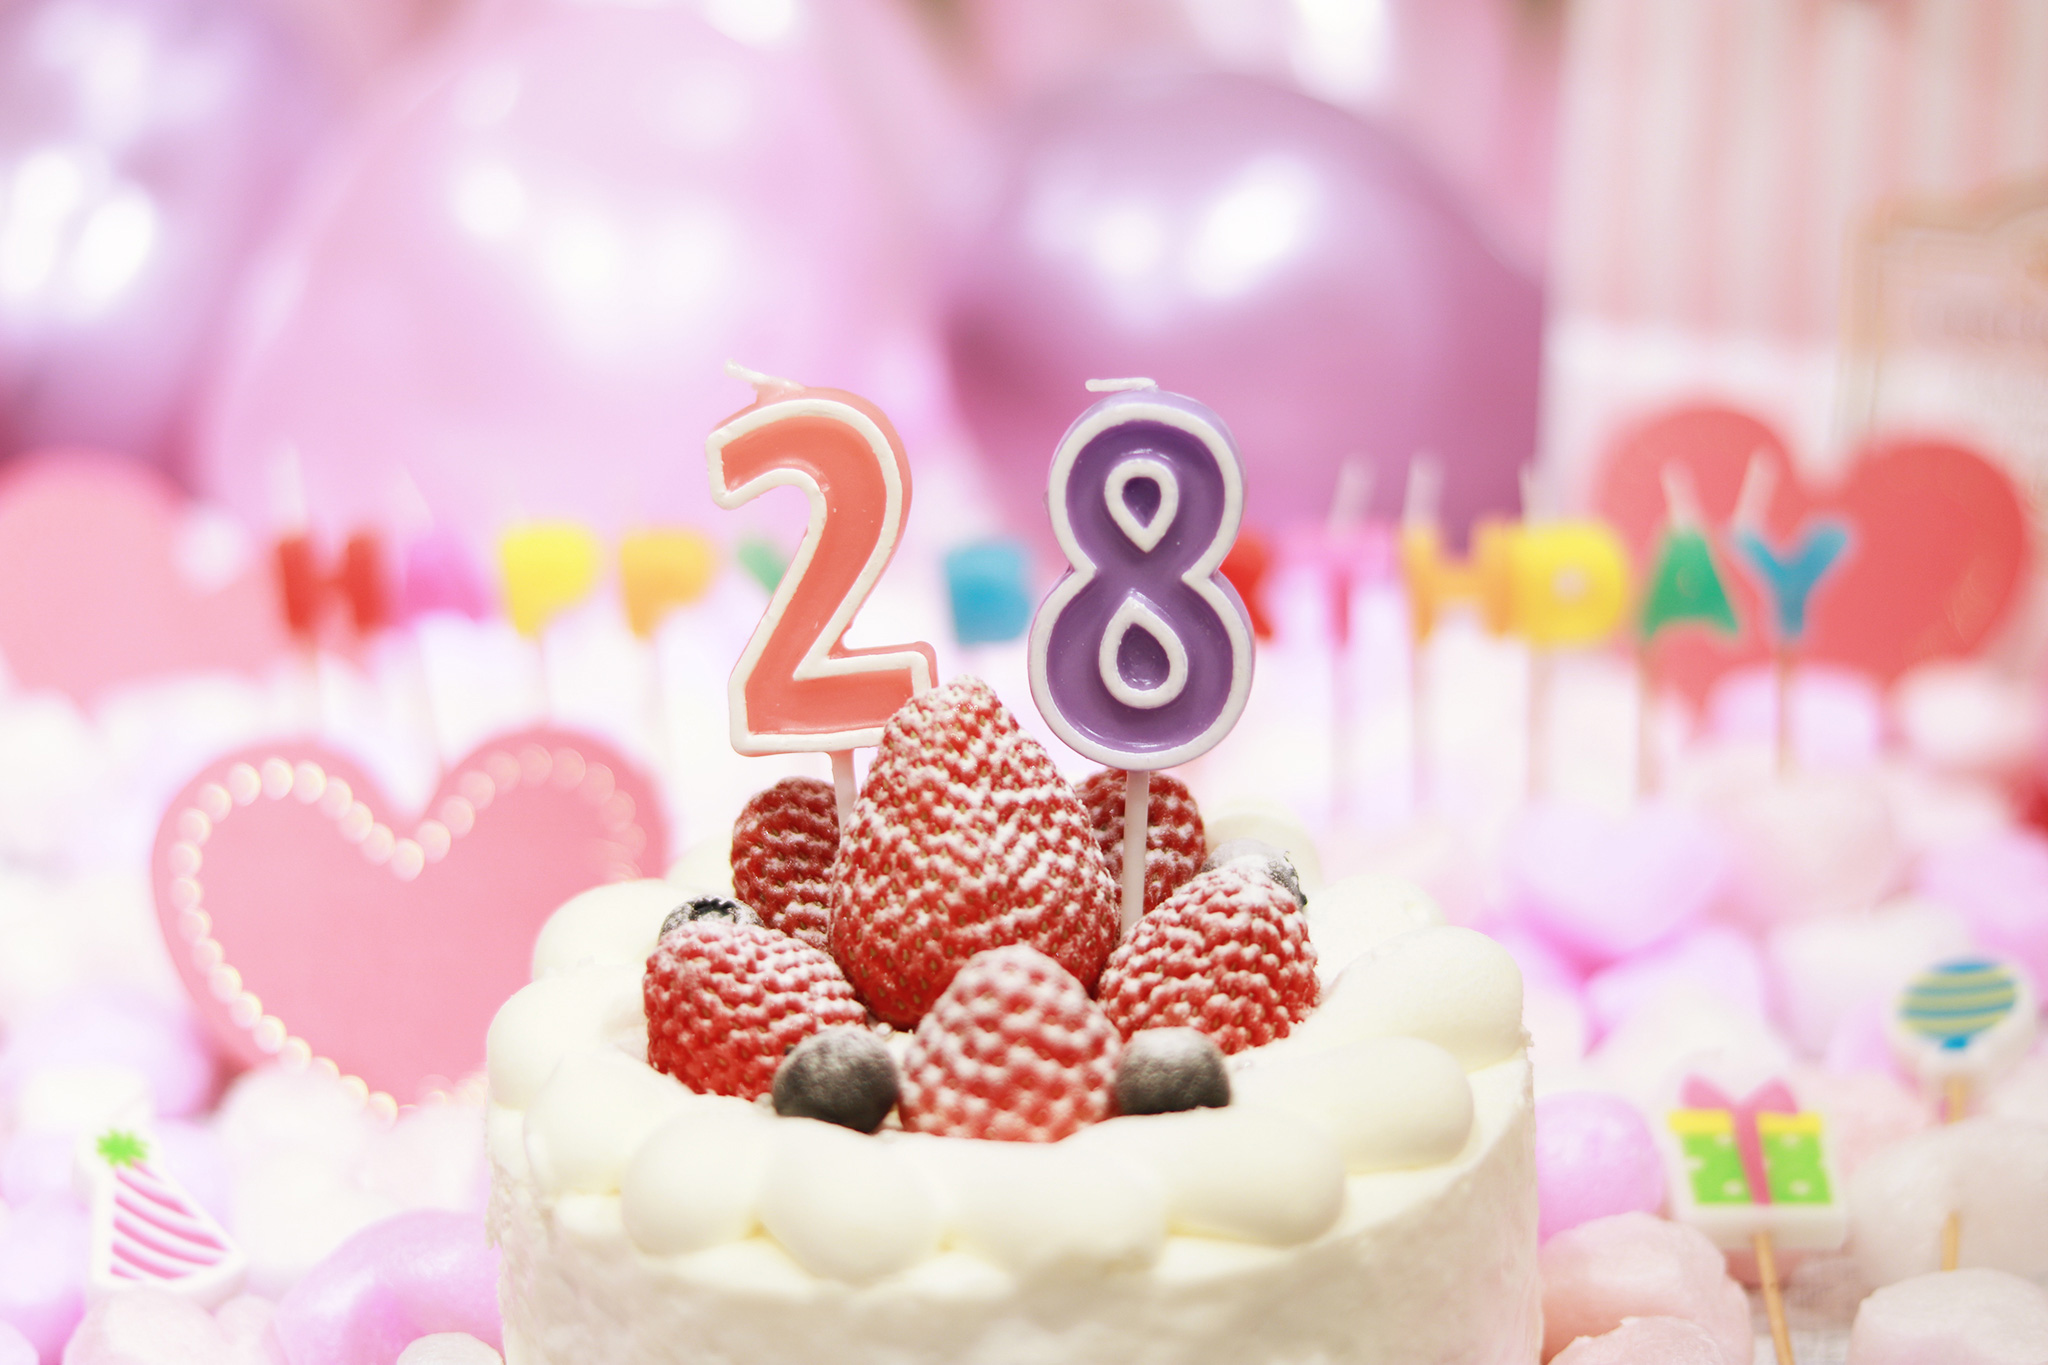 オシャレな誕生日画像 可愛いケーキとキャンドルでお祝い 28歳編 のフリー画像 おしゃれなフリー写真素材 Girly Drop